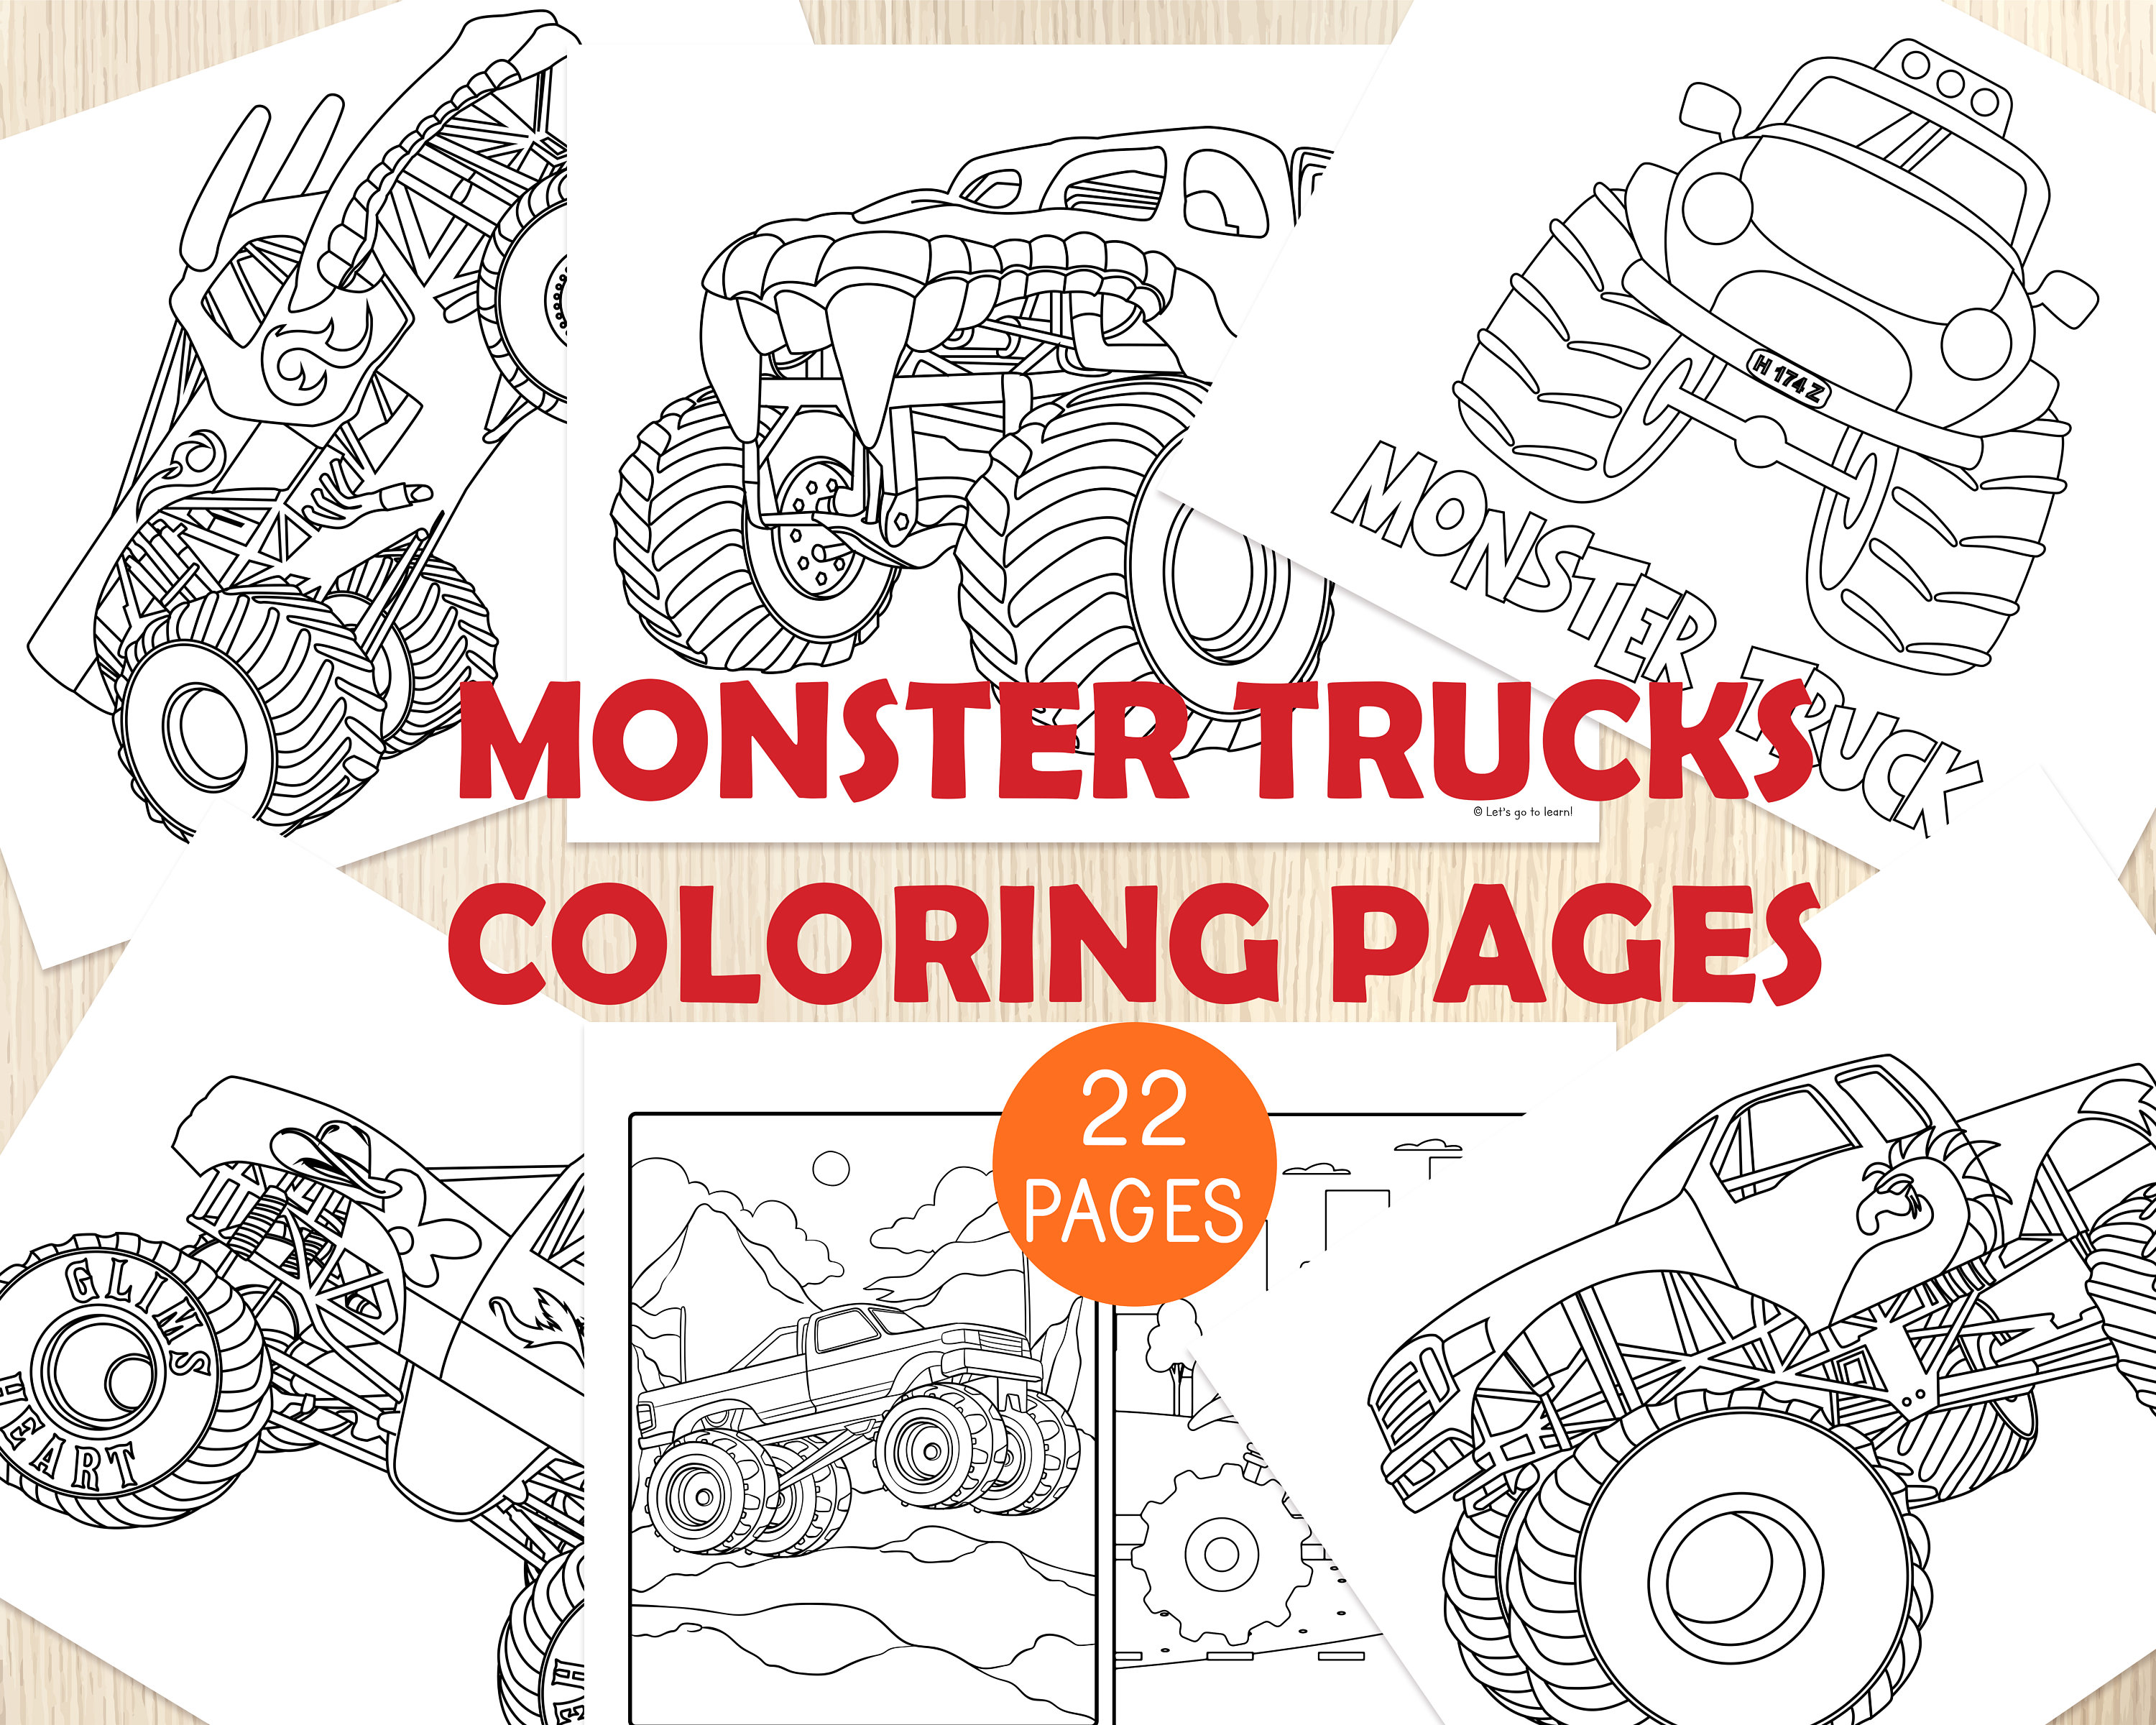 Monster trucks color